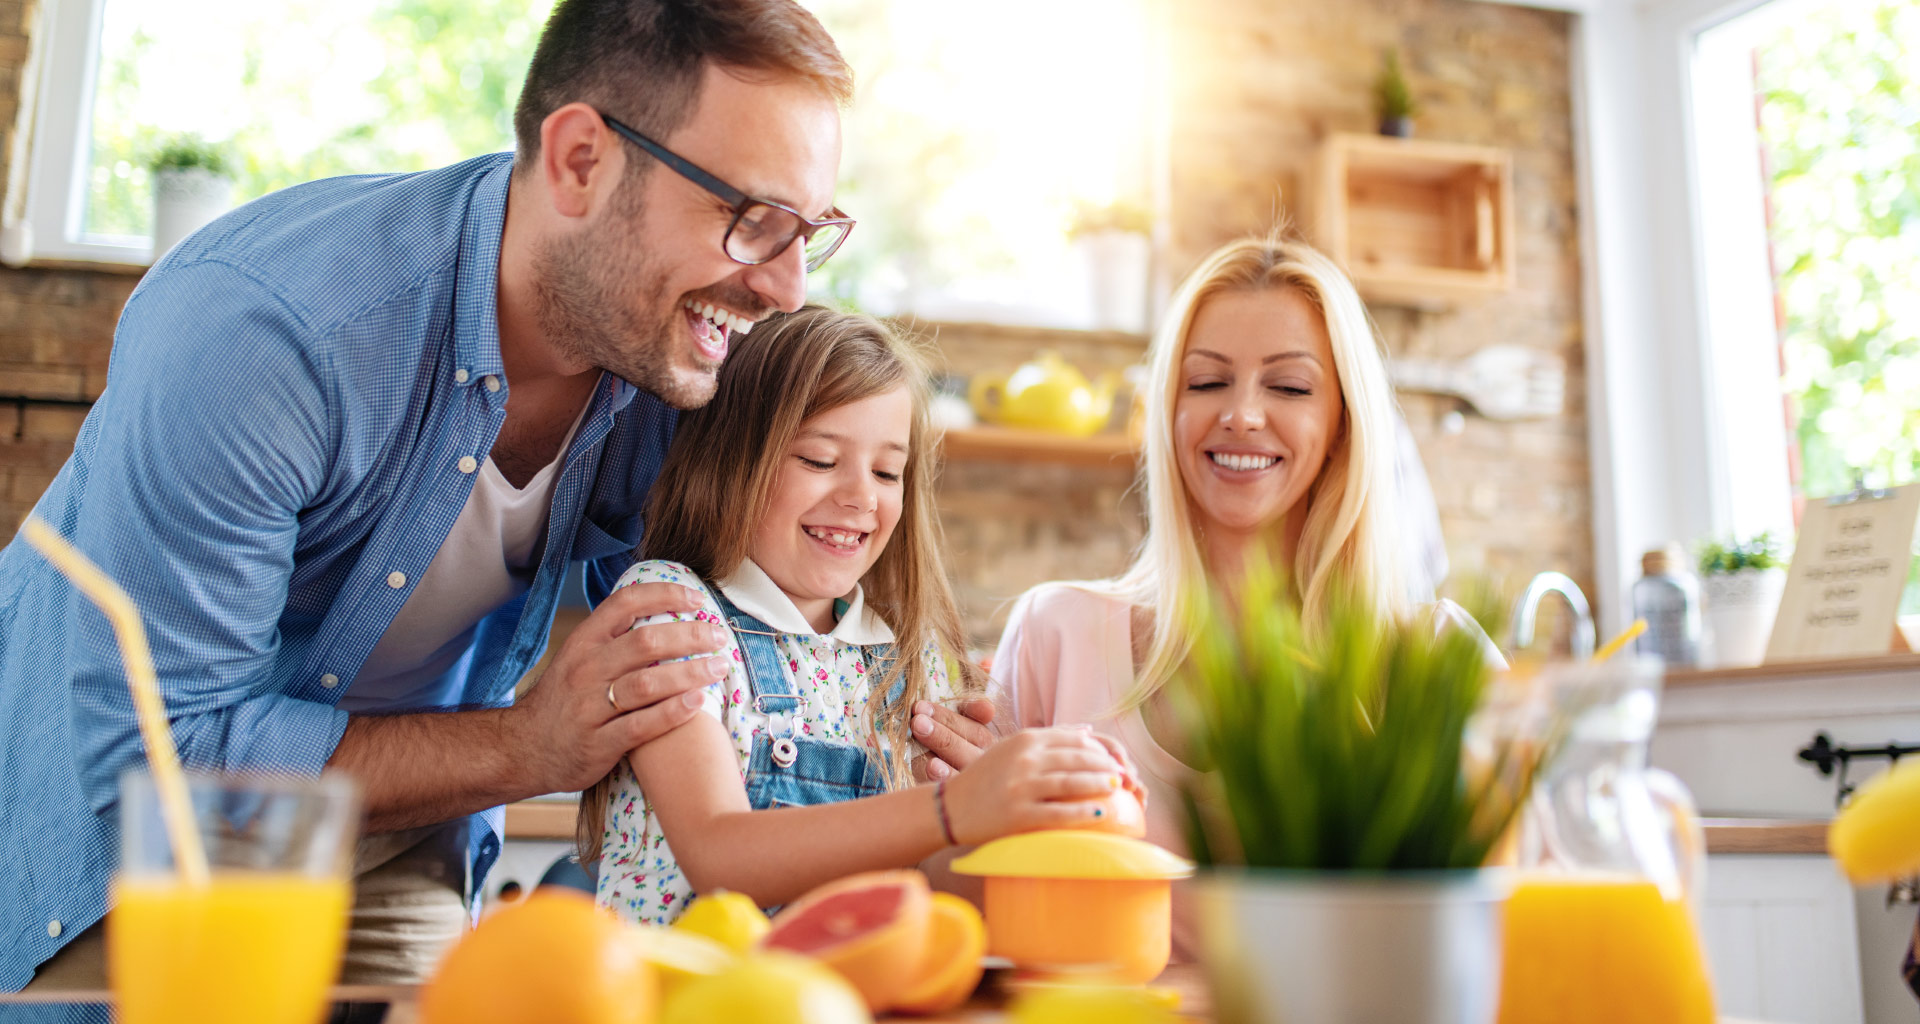 Spremuta d'arancia, un toccasana per l'estate: i benefici per l'organismo e  come consumarla - Tanta Salute